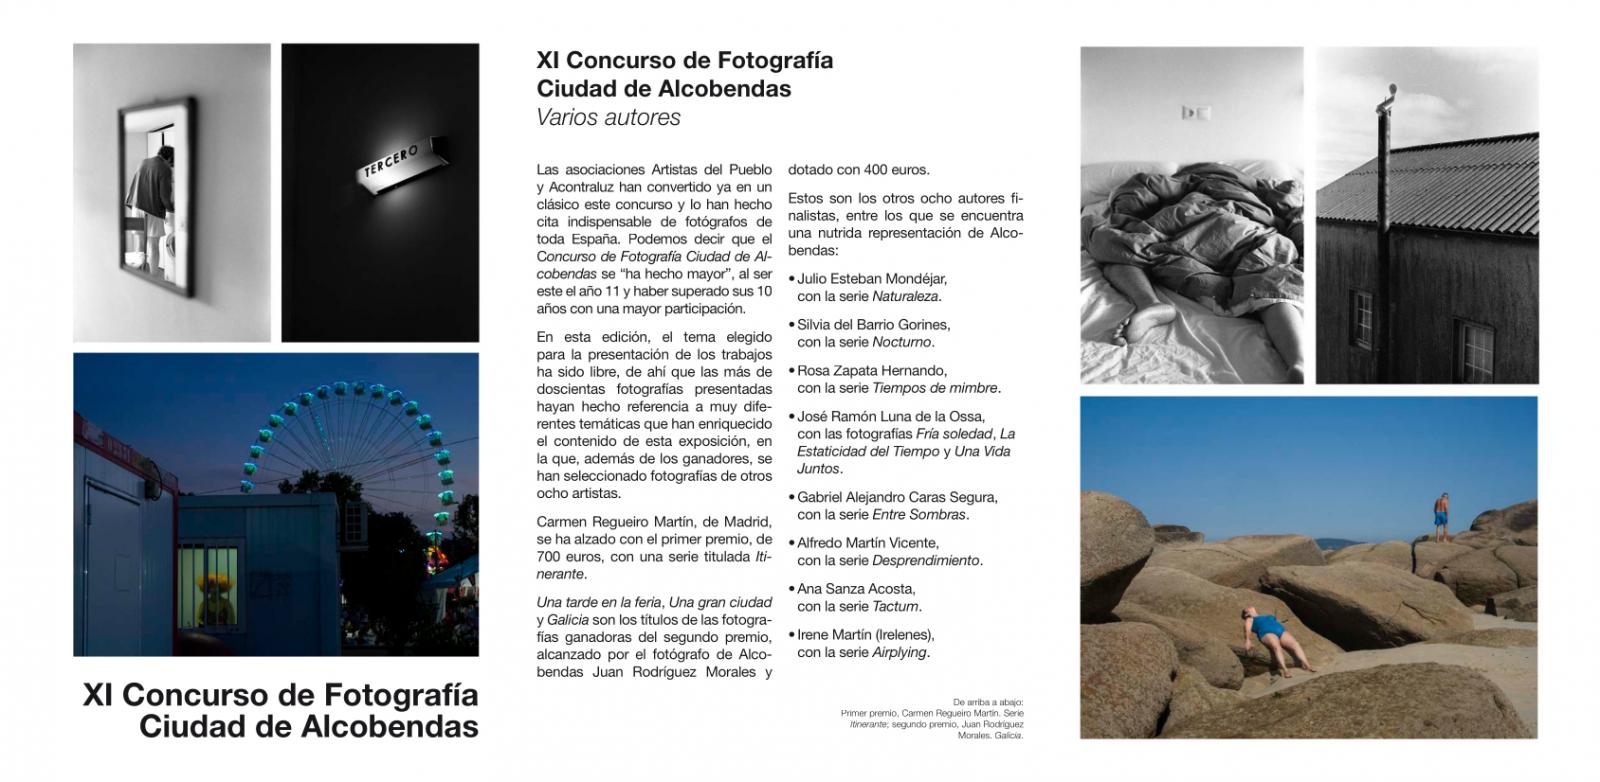 XI Concurso de Fotografía Ciudad de Alcobendas group exhibition